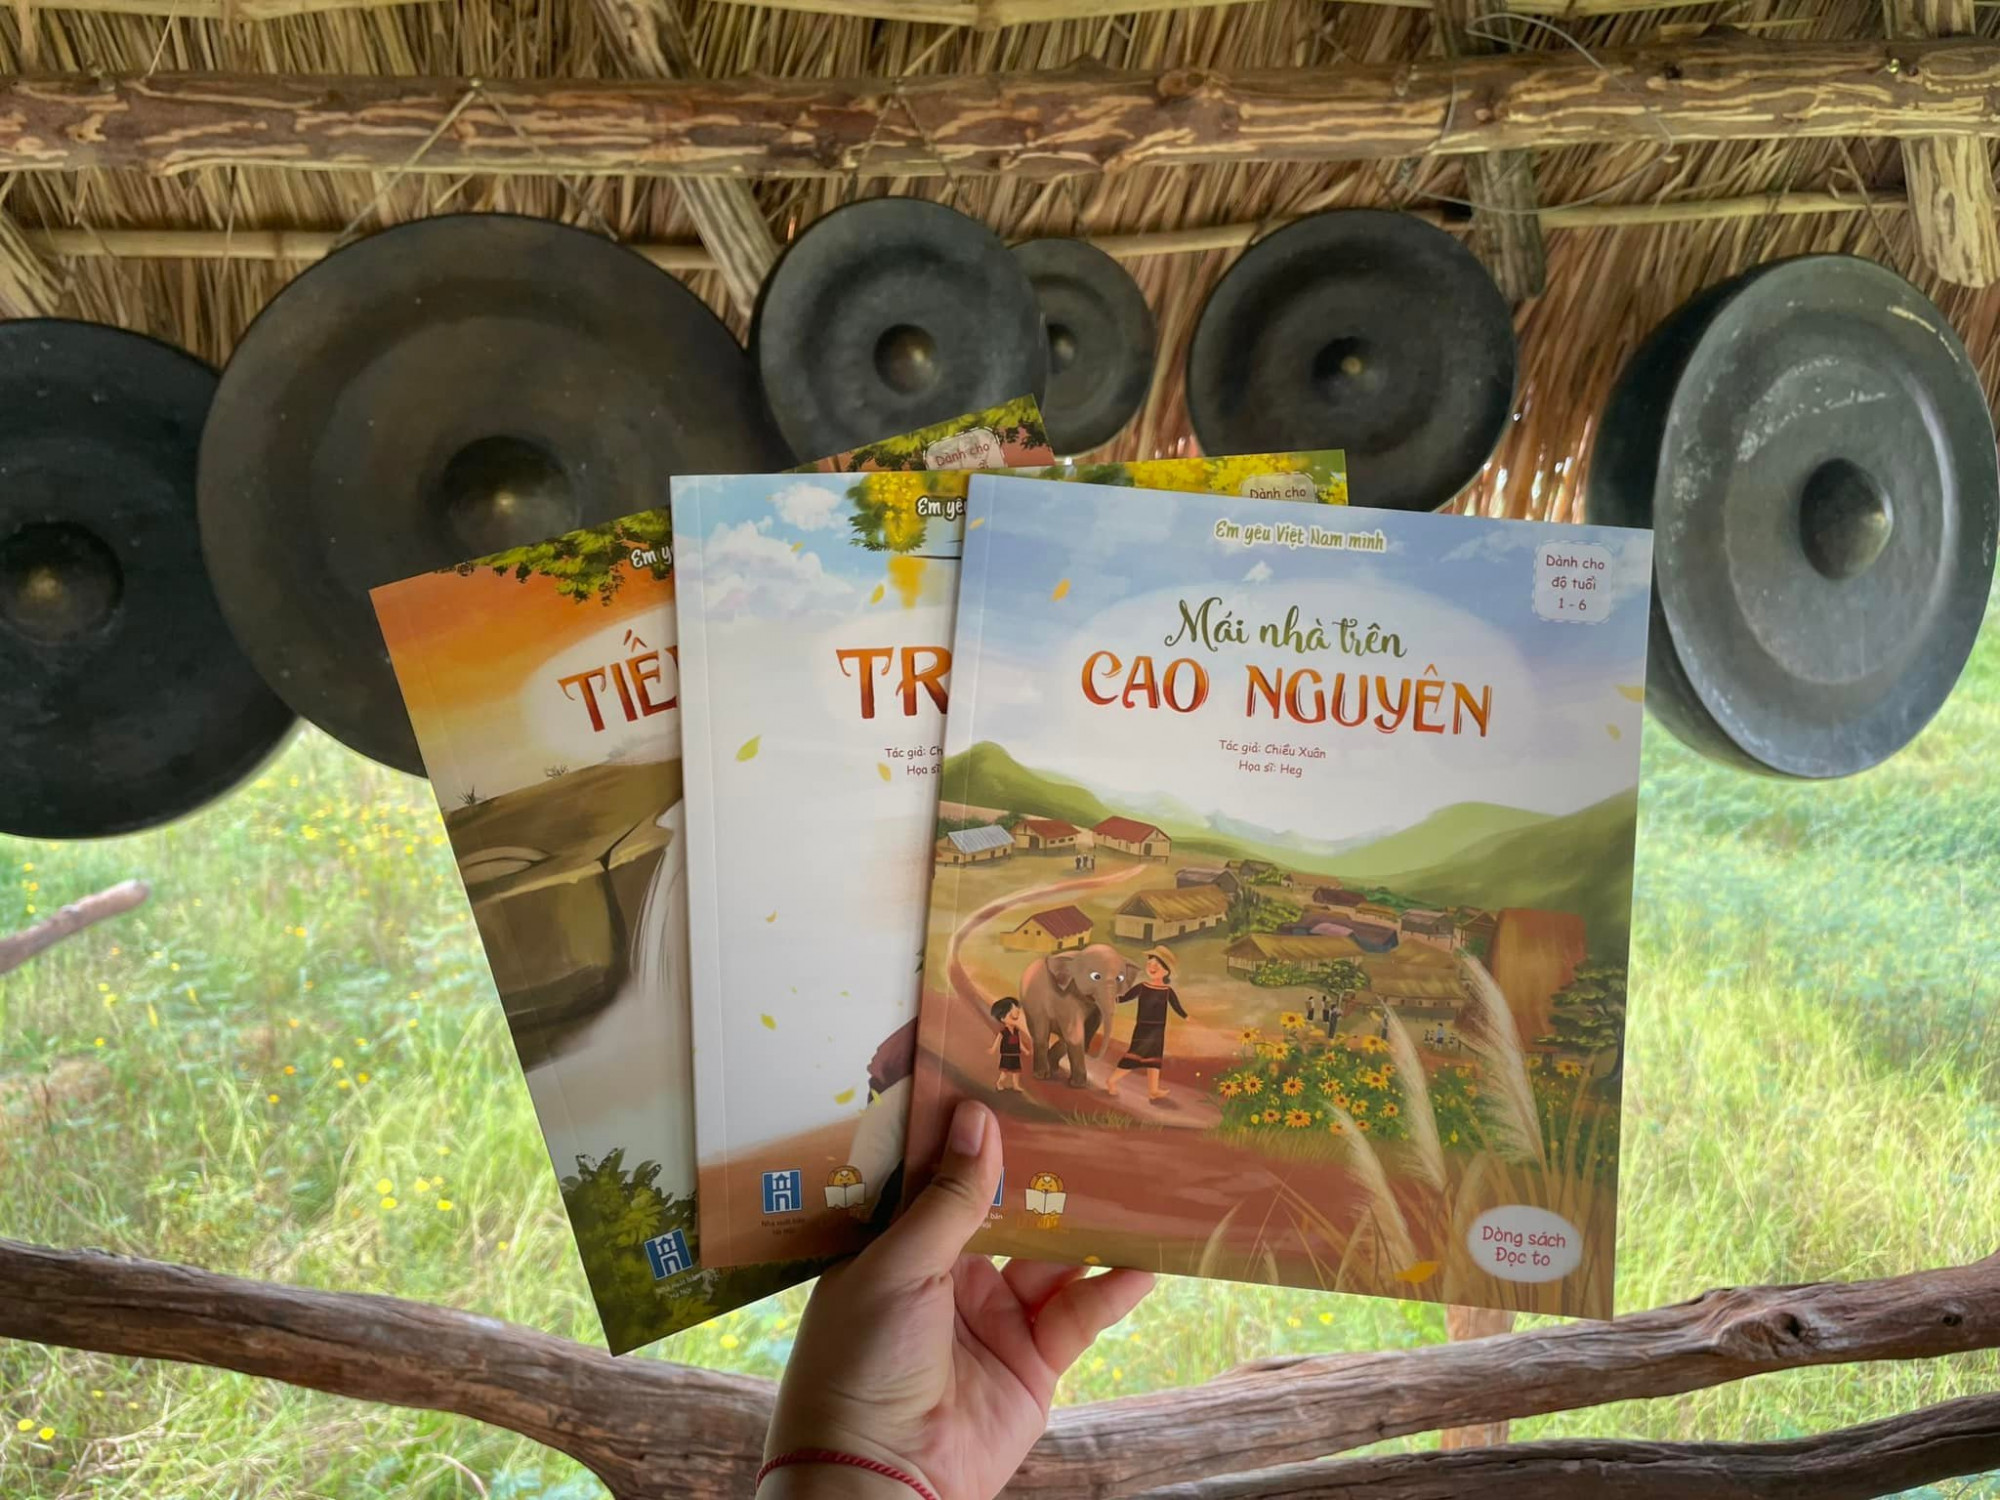 Cùng với Chuyện mùa Trăng, bộ sách Tiếng rừng được tặng cho trẻ nhỏ miền cao Kon Tum